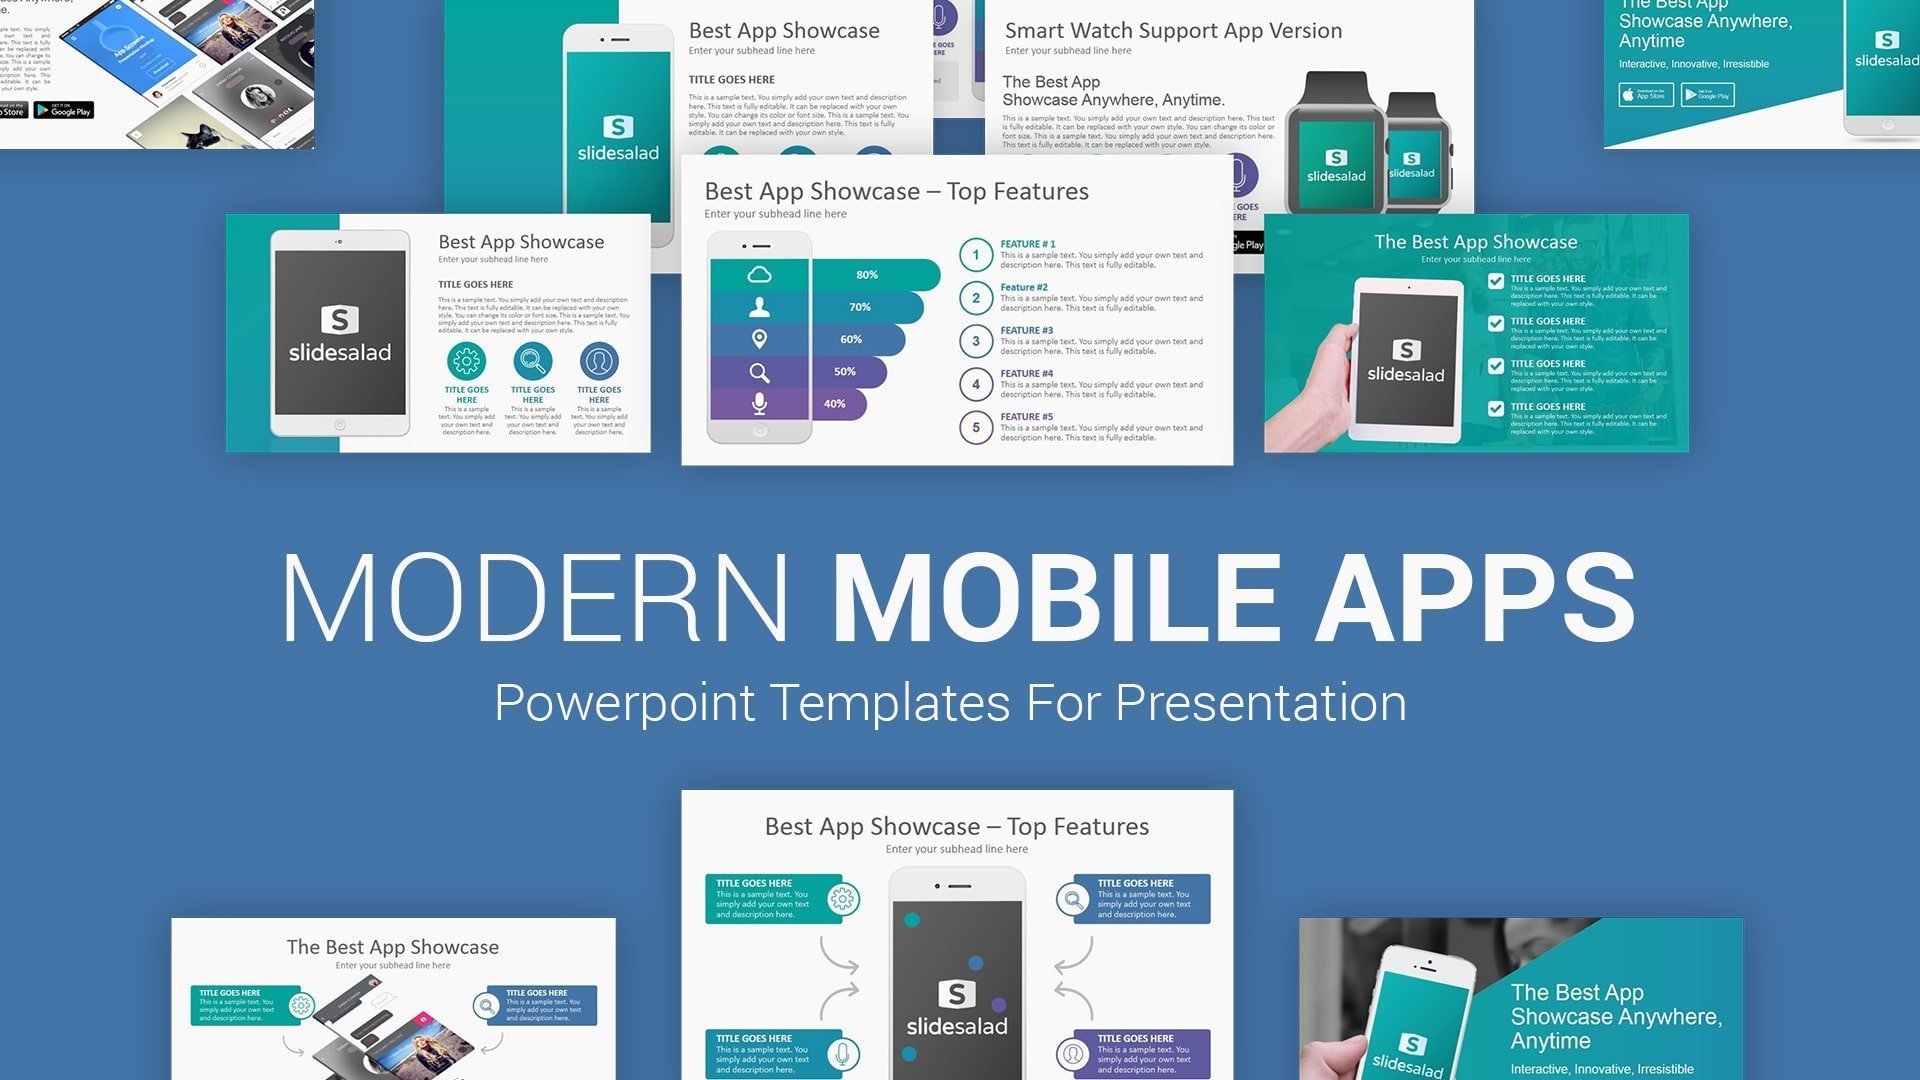 Tampilan Template PowerPoint Company Profile Mobile Apps Kreasi Masa Kini Dalam Membuat Presentasi dengan Baik